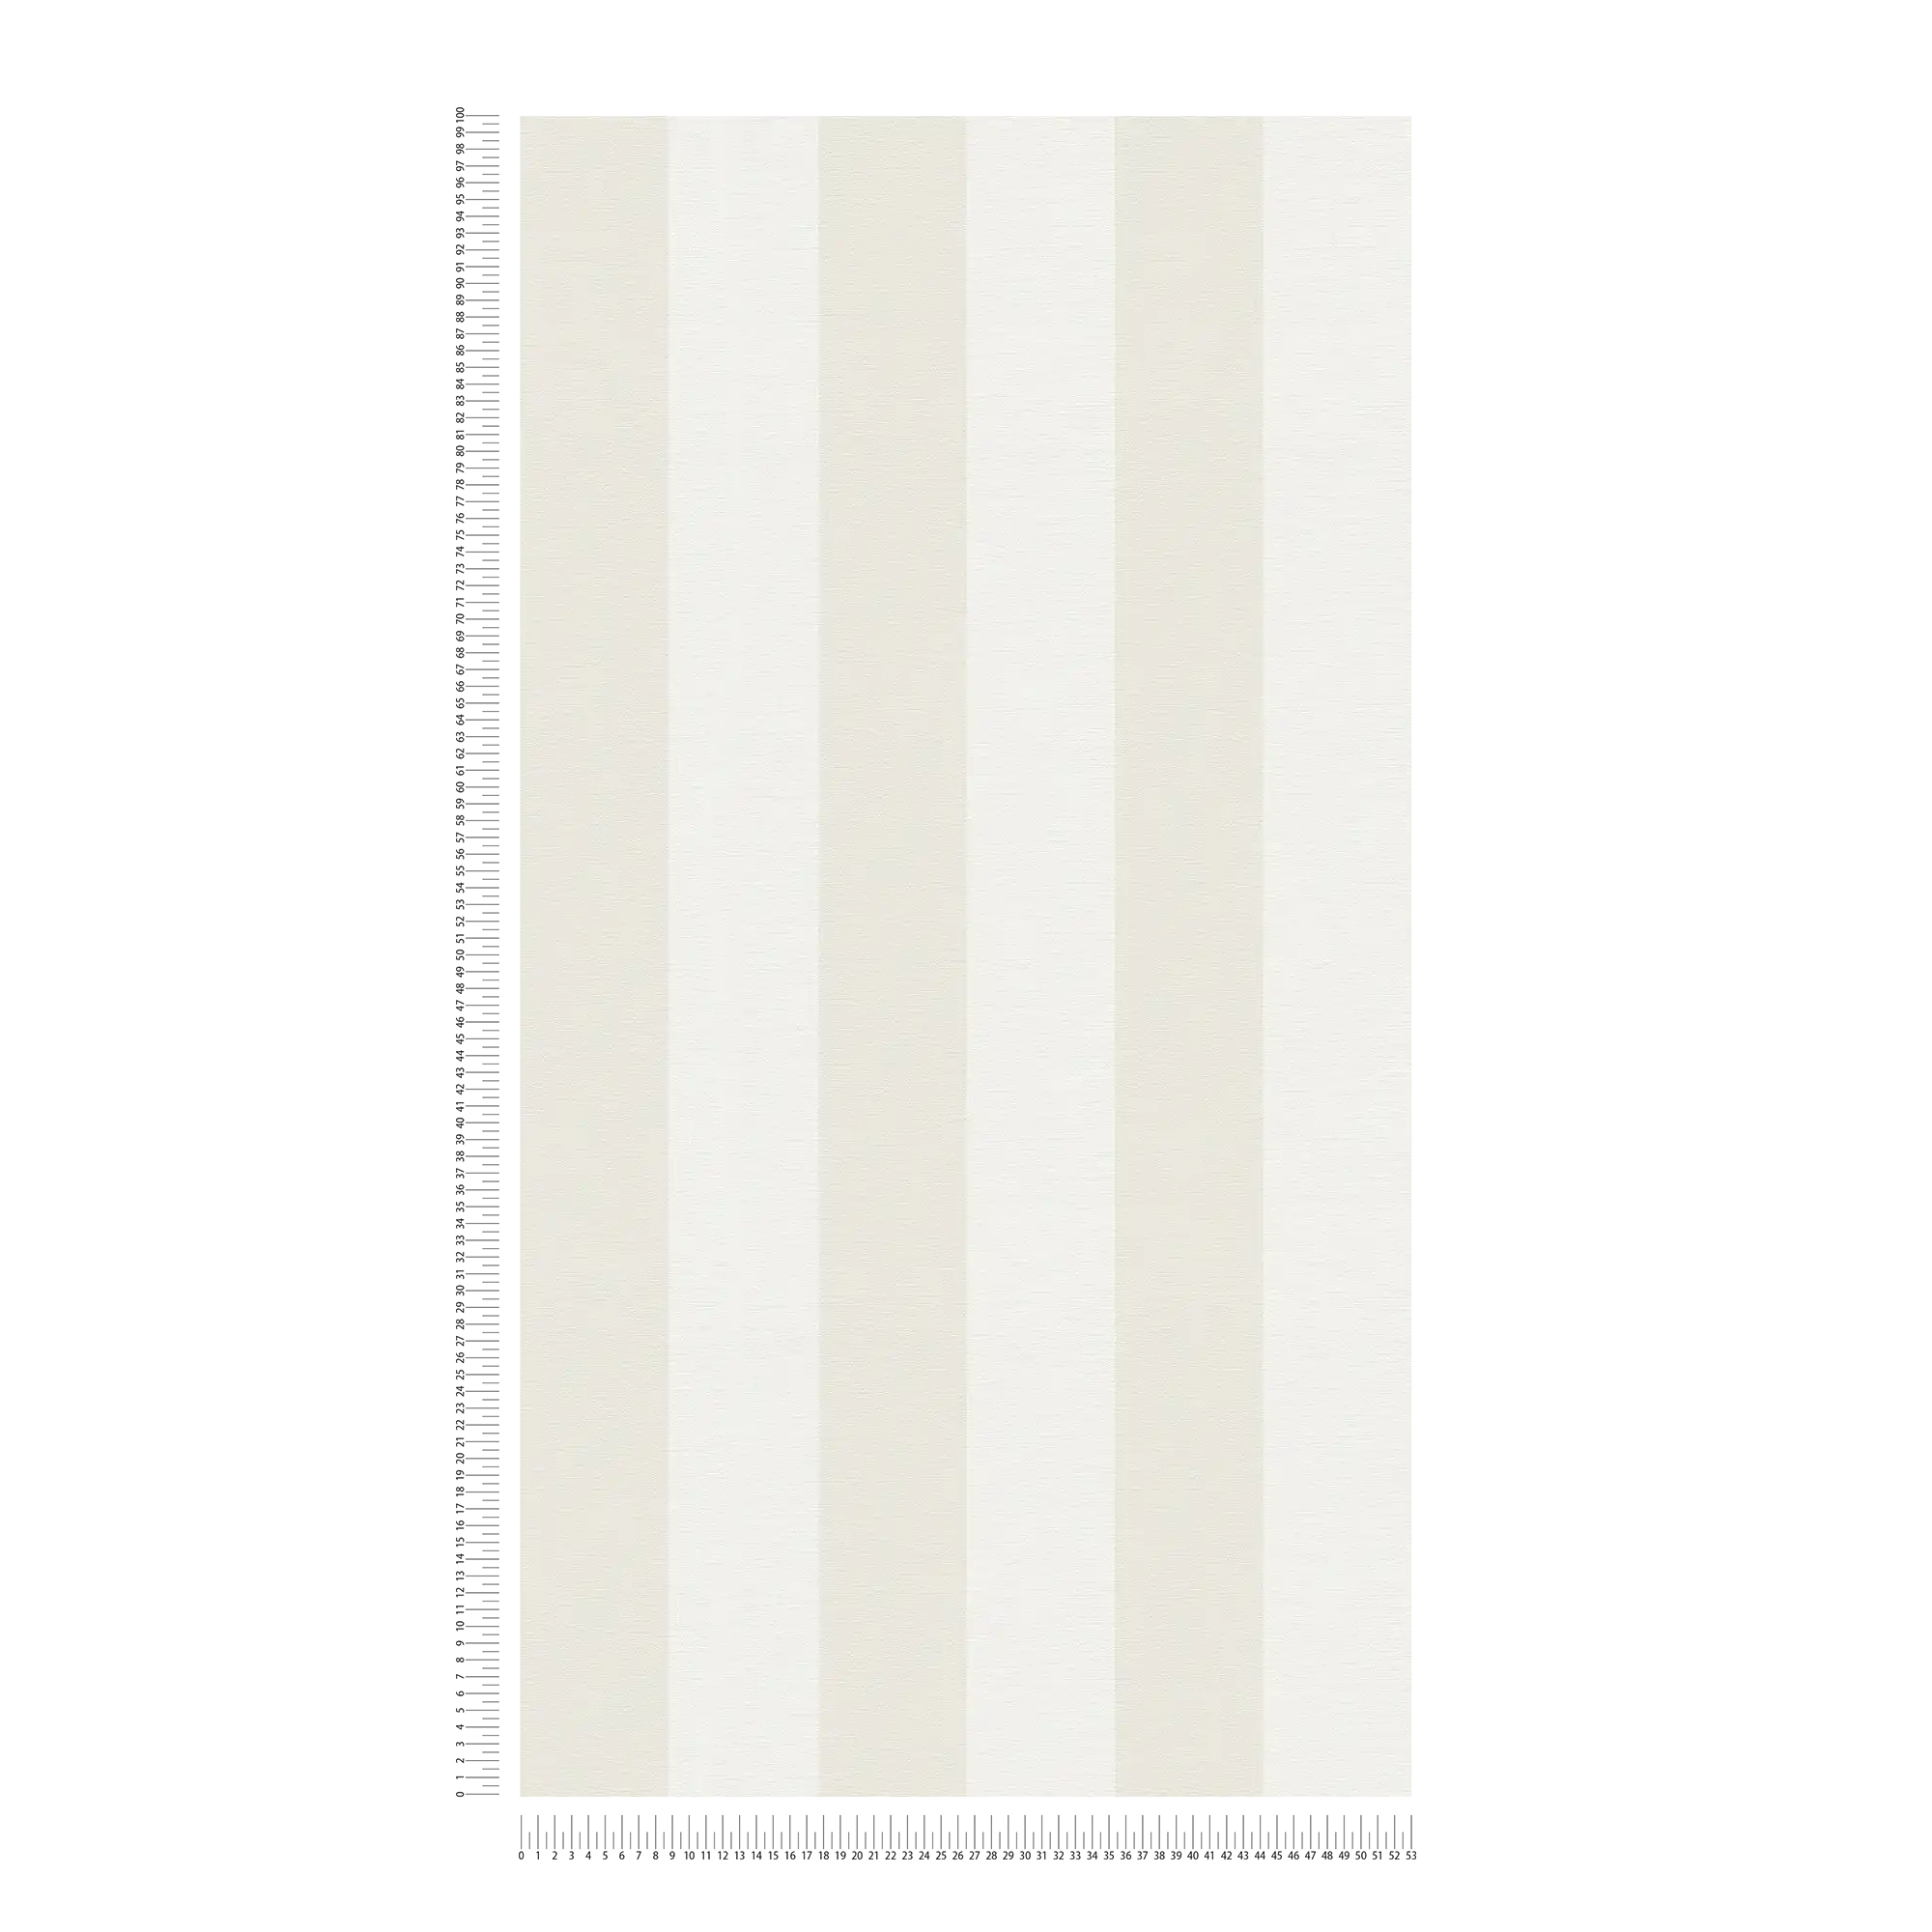             Papier peint à rayures en bloc avec aspect textile pour un design jeune - beige, blanc
        